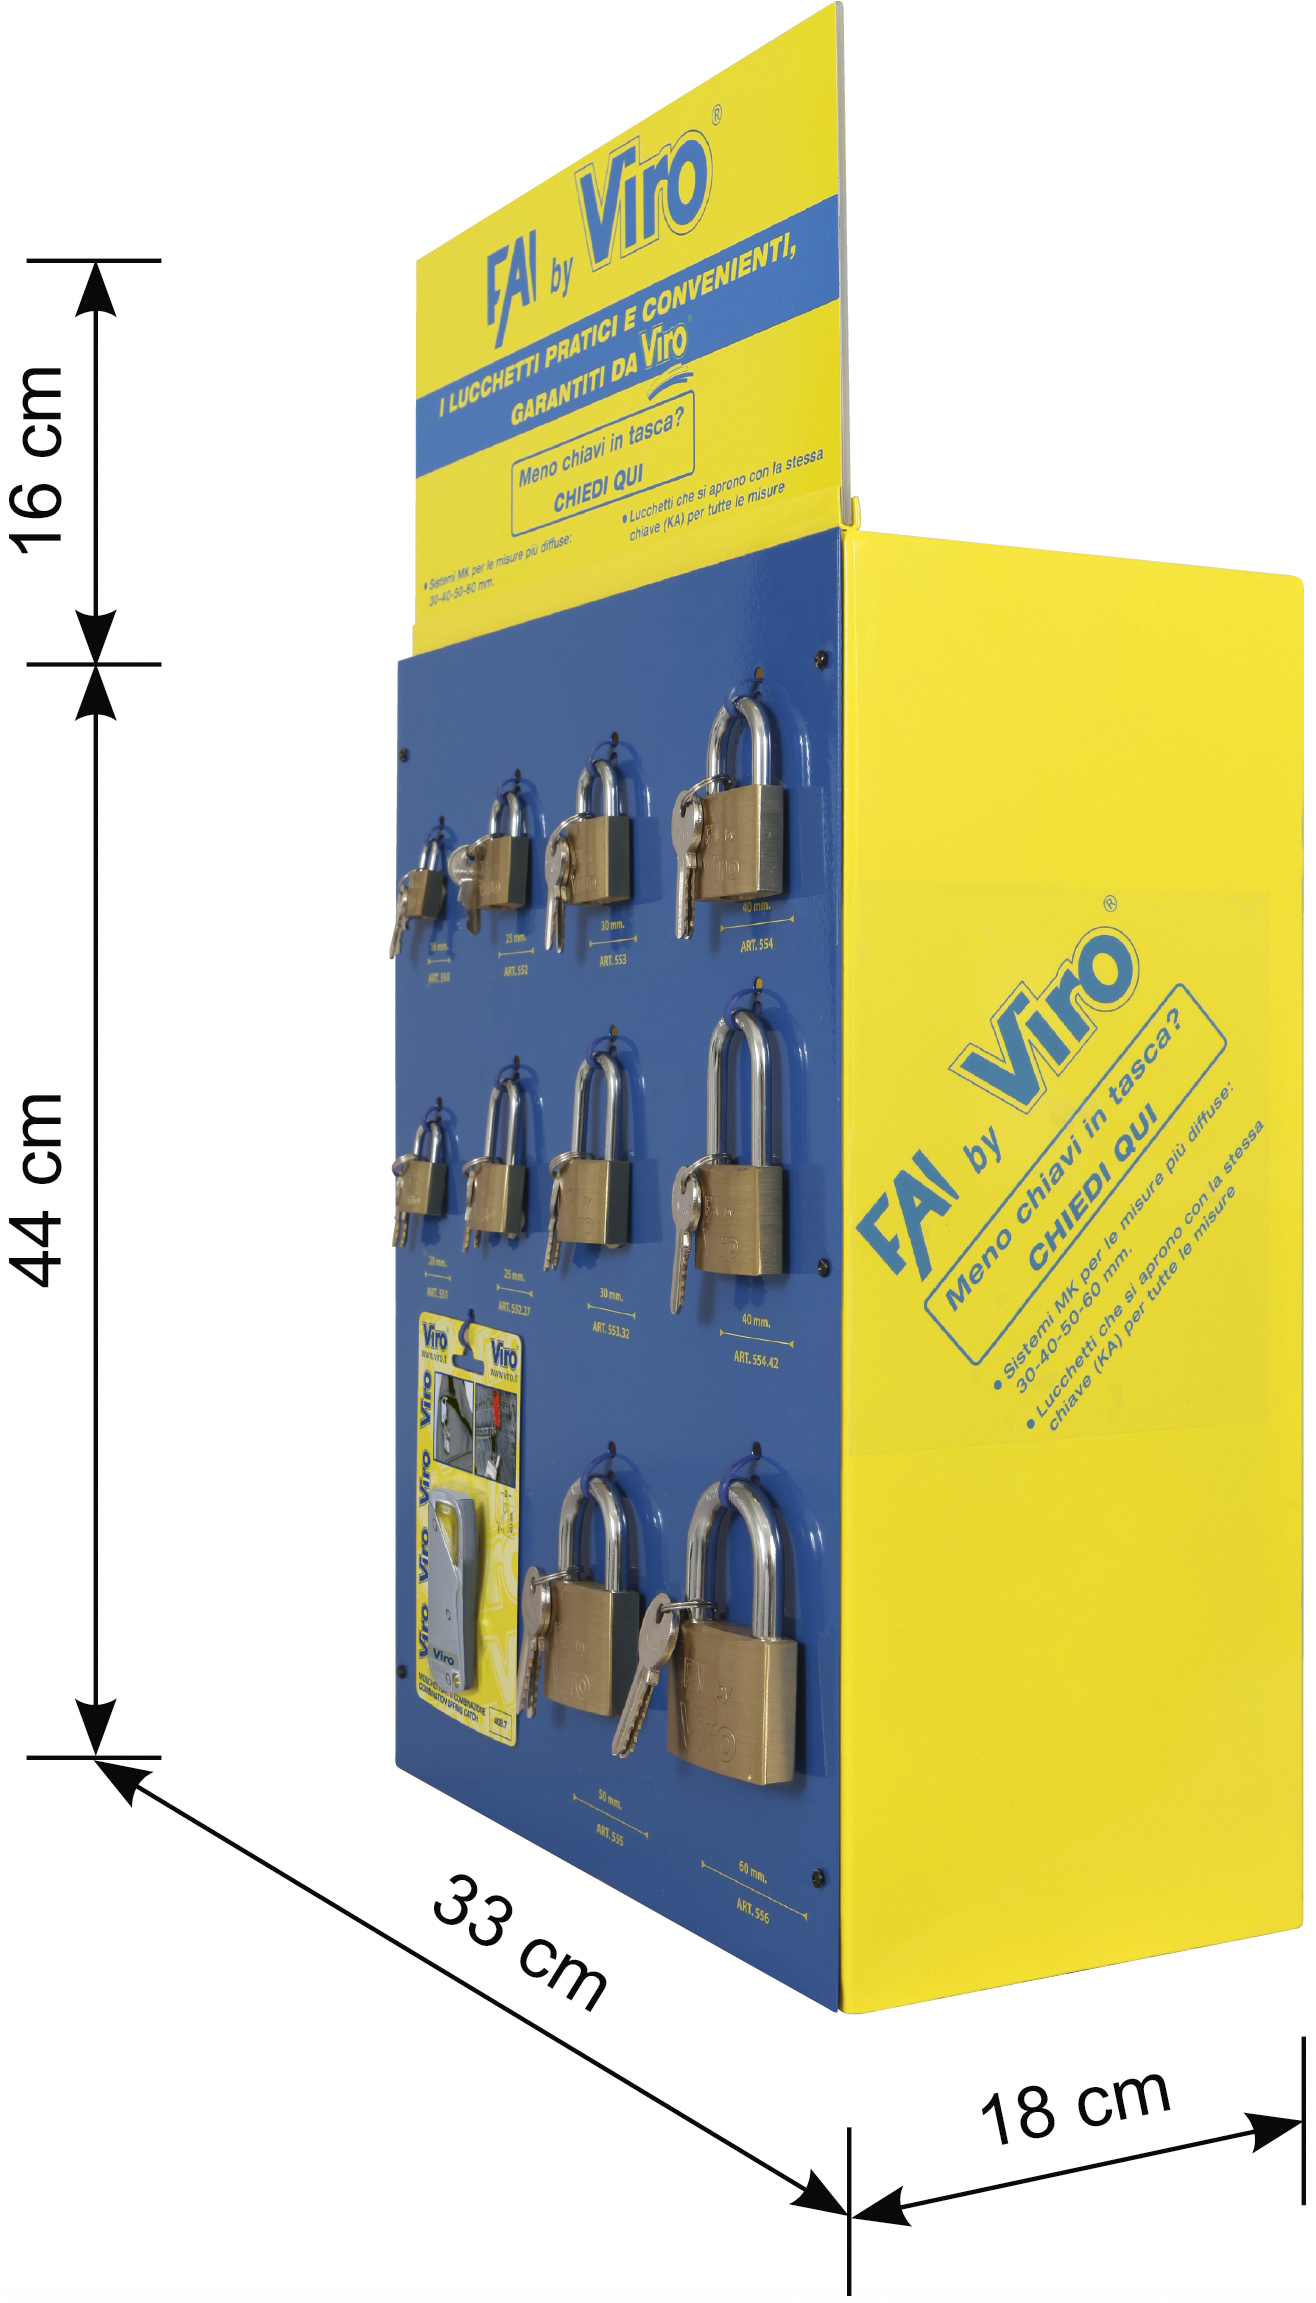 VIRO - FAI by Viro - Merchandiser for padlocks